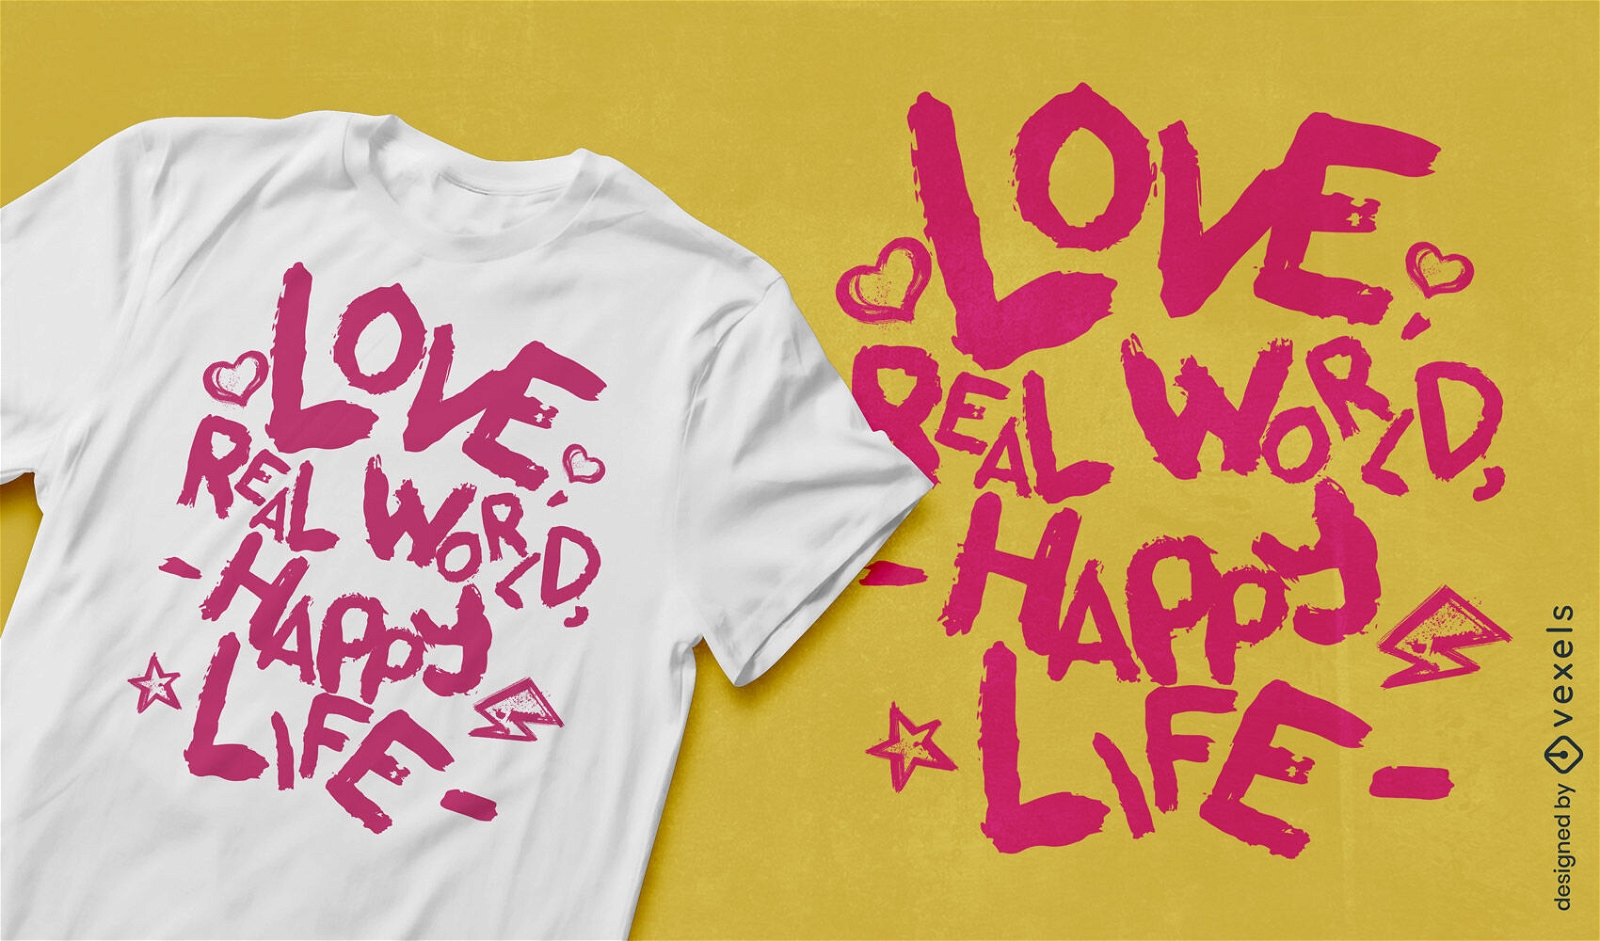 Diseño de camiseta con cita de amor romántica y optimista.